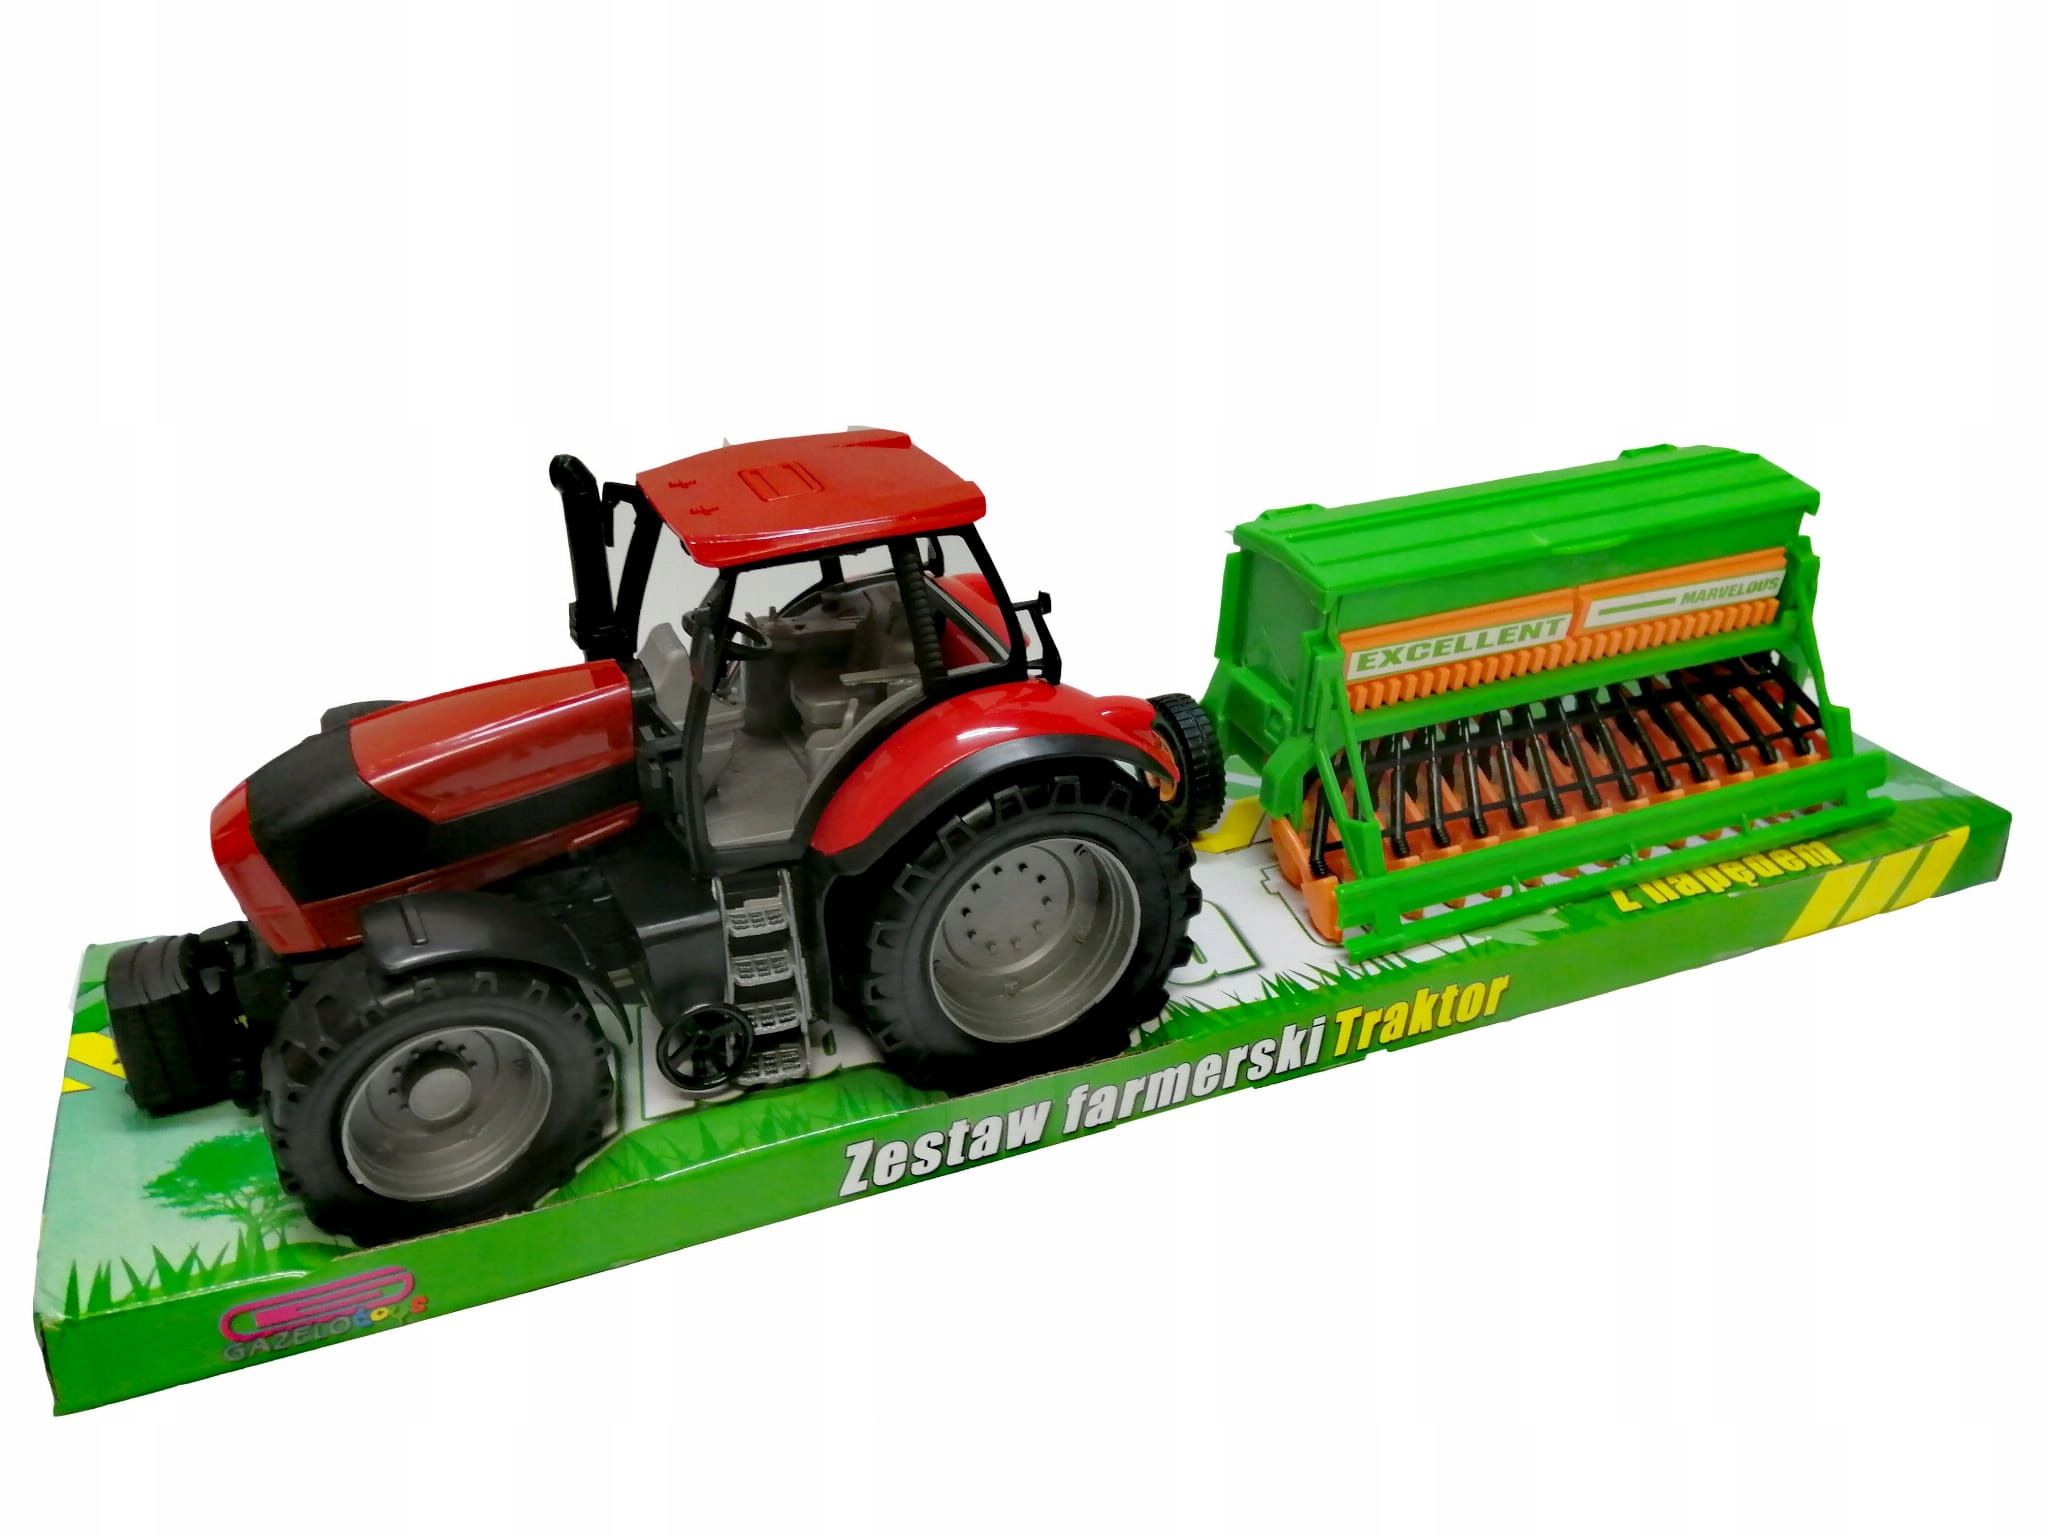 Zabawka Duży Traktor Z Siewnikiem Dla Chłopca 53 Cm